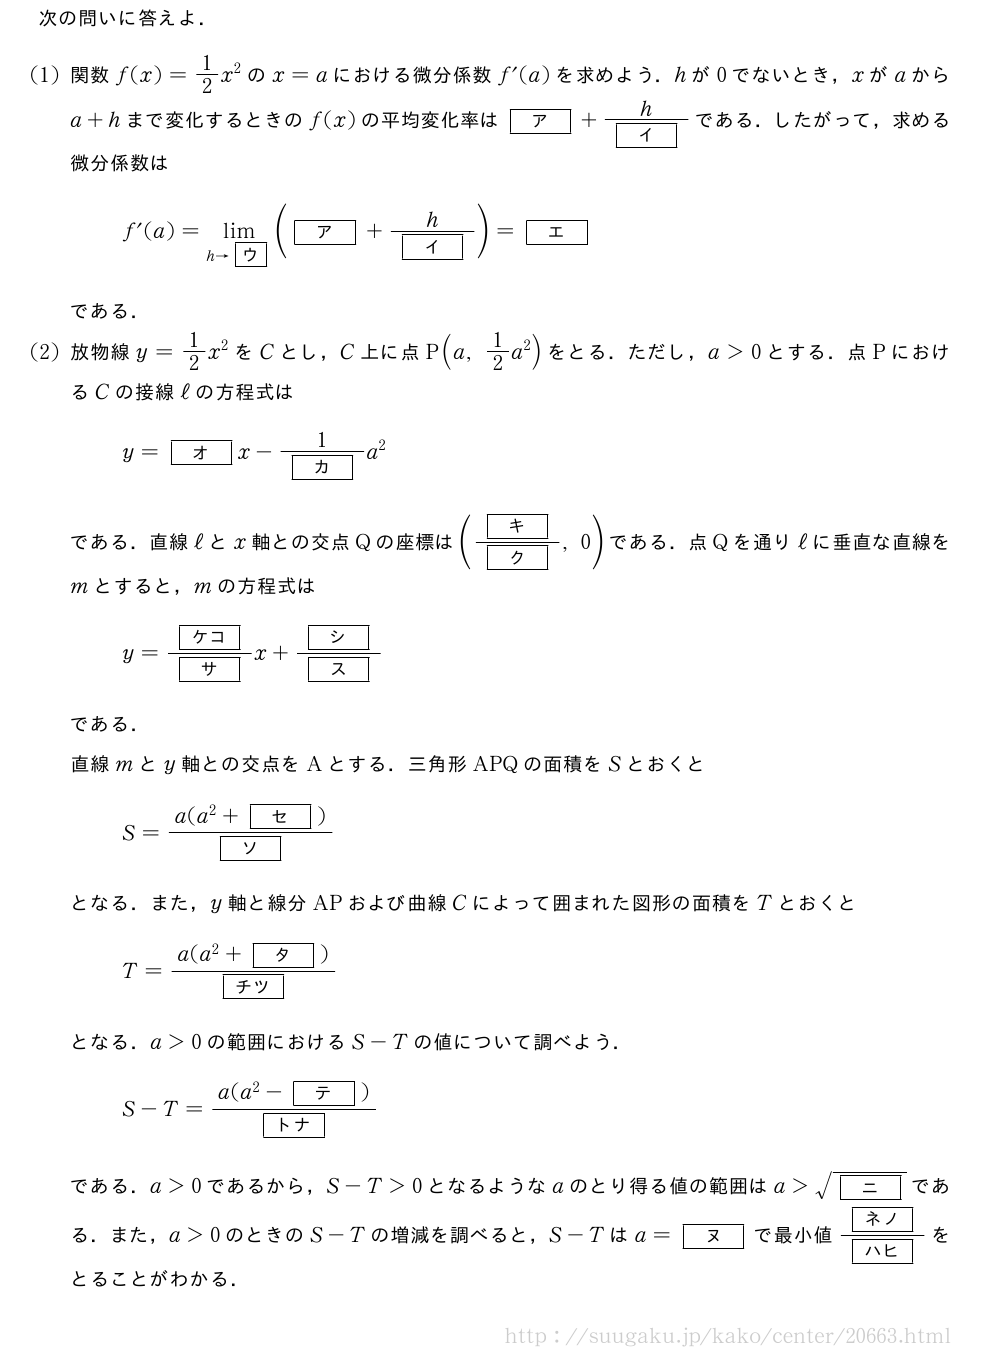 次の問いに答えよ．(1)関数f(x)=1/2x^2のx=aにおける微分係数f´(a)を求めよう．hが0でないとき，xがaからa+hまで変化するときのf(x)の平均変化率は[ア]+\frac{h}{[イ]}である．したがって，求める微分係数はf´(a)=\lim_{h→\mkakko{ウ}}([ア]+\frac{h}{[イ]})=[エ]である．(2)放物線y=1/2x^2をCとし，C上に点P(a,1/2a^2)をとる．ただし，a＞0とする．点PにおけるCの接線ℓの方程式はy=[オ]x-\frac{1}{[カ]}a^2である．直線ℓとx軸との交点Qの座標は(\frac{[キ]}{[ク]},0)である．点Qを通りℓに垂直な直線をmとすると，mの方程式はy=\frac{[ケコ]}{[サ]}x+\frac{[シ]}{[ス]}である．直線mとy軸との交点をAとする．三角形APQの面積をSとおくとS=\frac{a(a^2+[セ])}{[ソ]}となる．また，y軸と線分APおよび曲線Cによって囲まれた図形の面積をTとおくとT=\frac{a(a^2+[タ])}{[チツ]}となる．a＞0の範囲におけるS-Tの値について調べよう．S-T=\frac{a(a^2-[テ])}{[トナ]}である．a＞0であるから，S-T＞0となるようなaのとり得る値の範囲はa＞\sqrt{[ニ]}である．また，a＞0のときのS-Tの増減を調べると，S-Tはa=[ヌ]で最小値\frac{[ネノ]}{[ハヒ]}をとることがわかる．